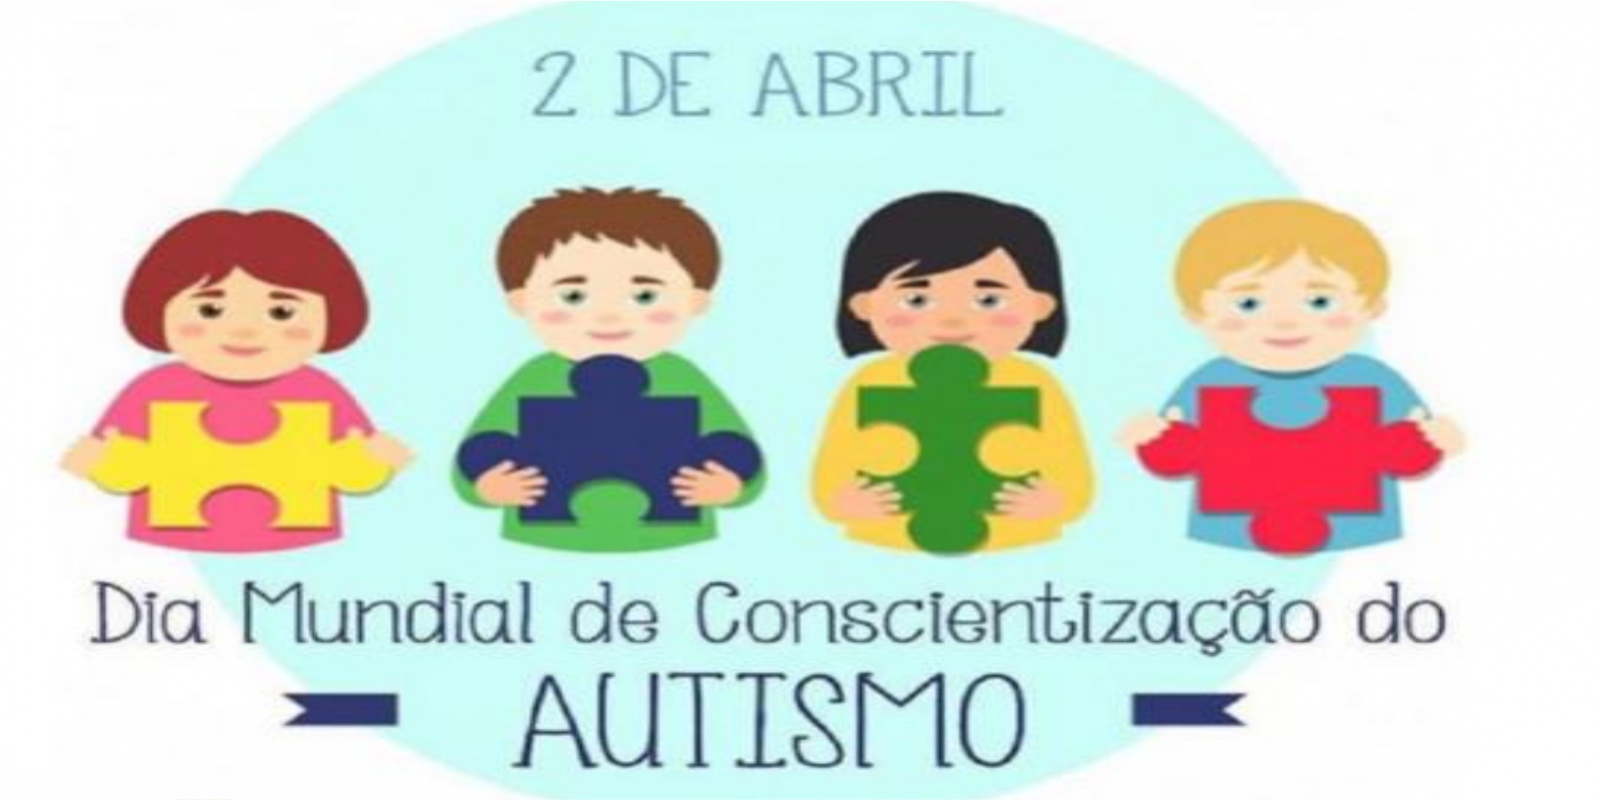 Dia Mundial de Conscientização Sobre o Autismo